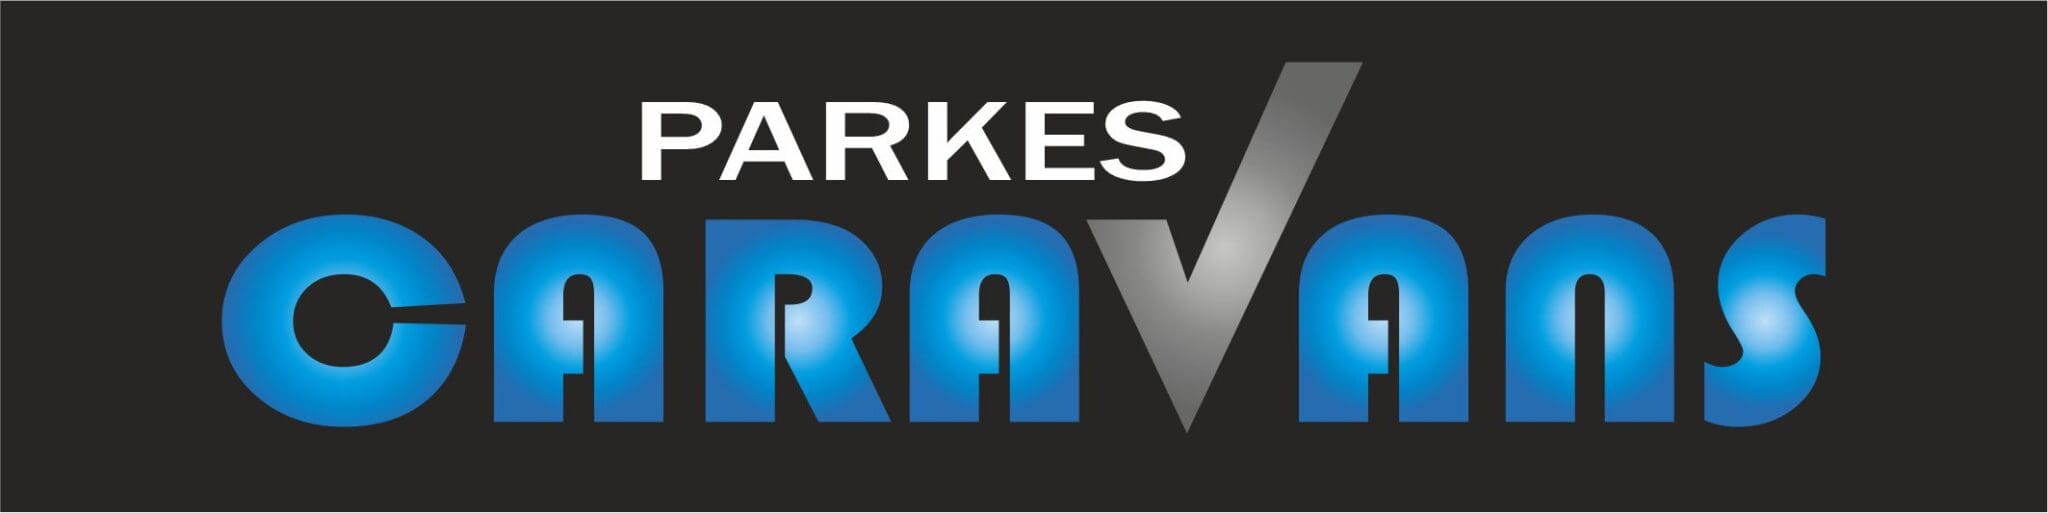 Parkes Caravans sponsor logo